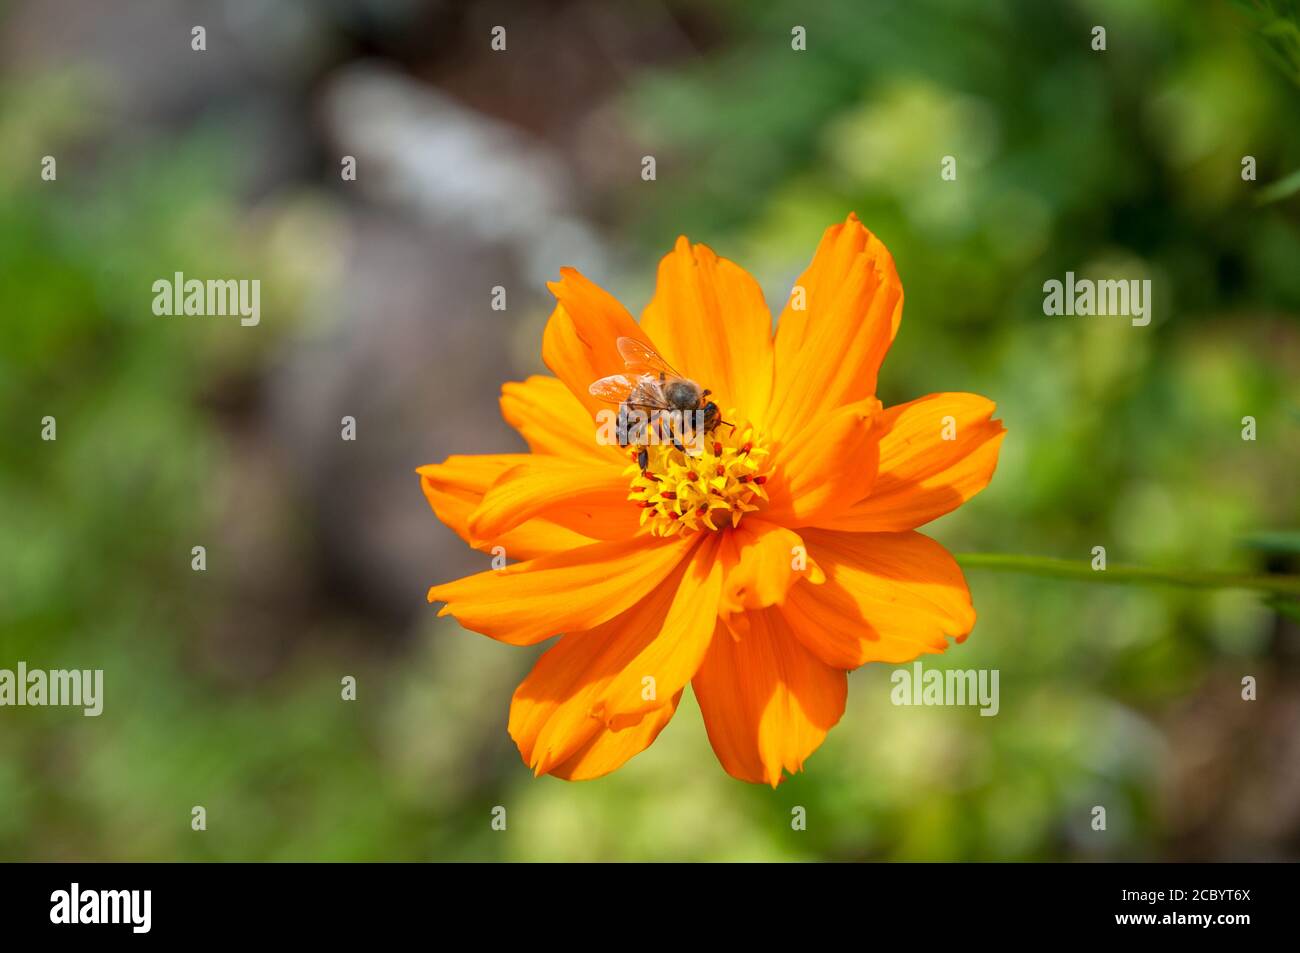 Gros plan d'une abeille se nourrissant d'une fleur d'orange avec un feuillage vert flou en arrière-plan. Banque D'Images